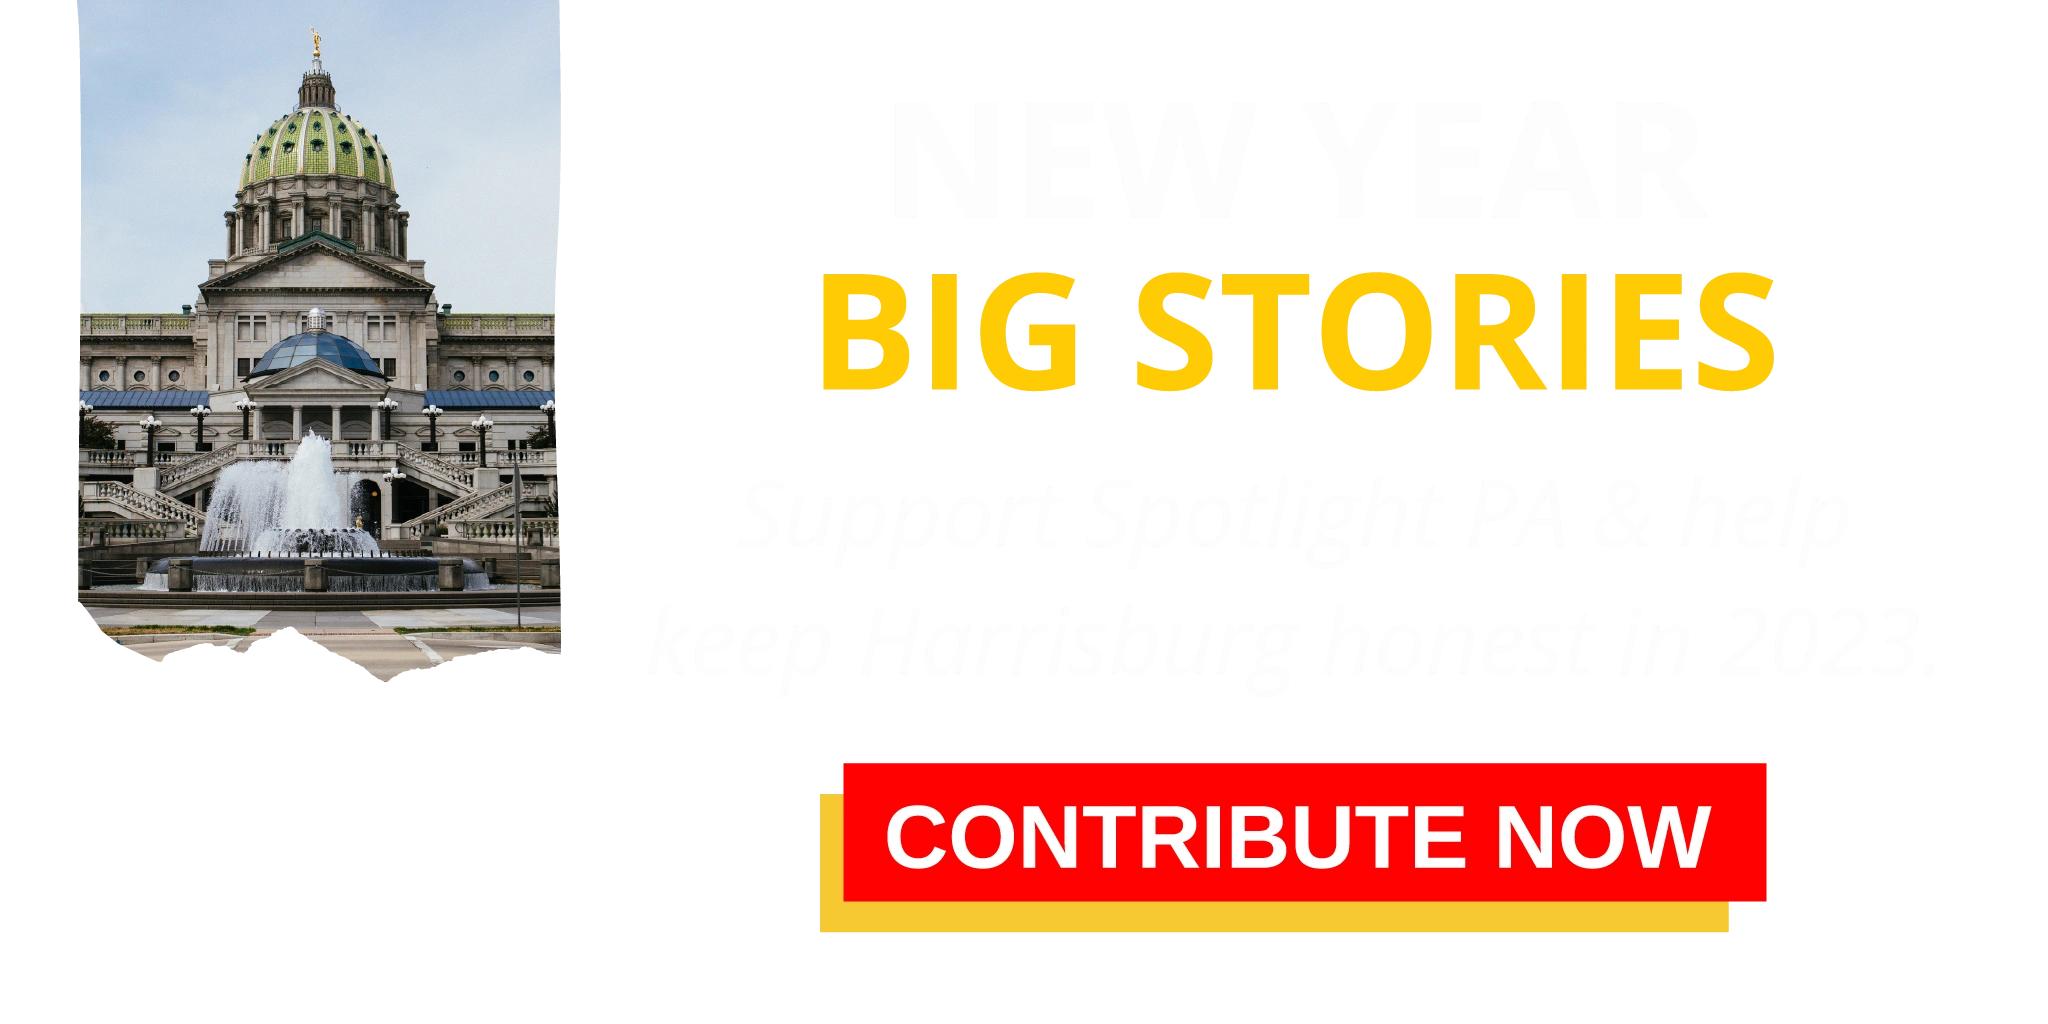 Donate to Spotlight PA